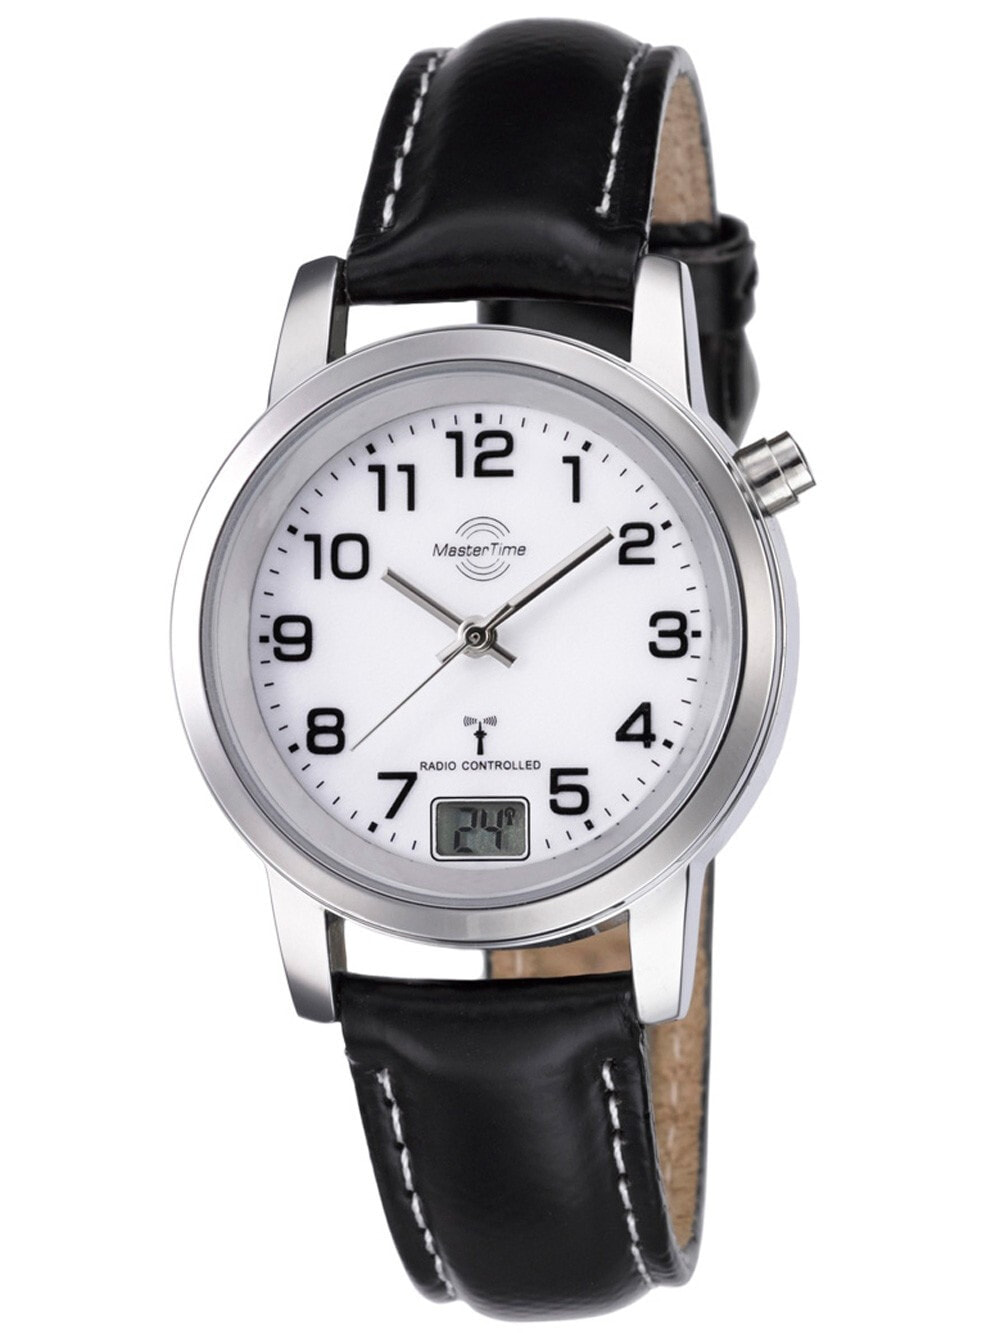 Женские наручные кварцевые часы MASTER TIME с арабскими цифрами, ремешком из нержавеющей стали и цифровым дисплеем даты. Часы водонепроницаемы до 3 бар.